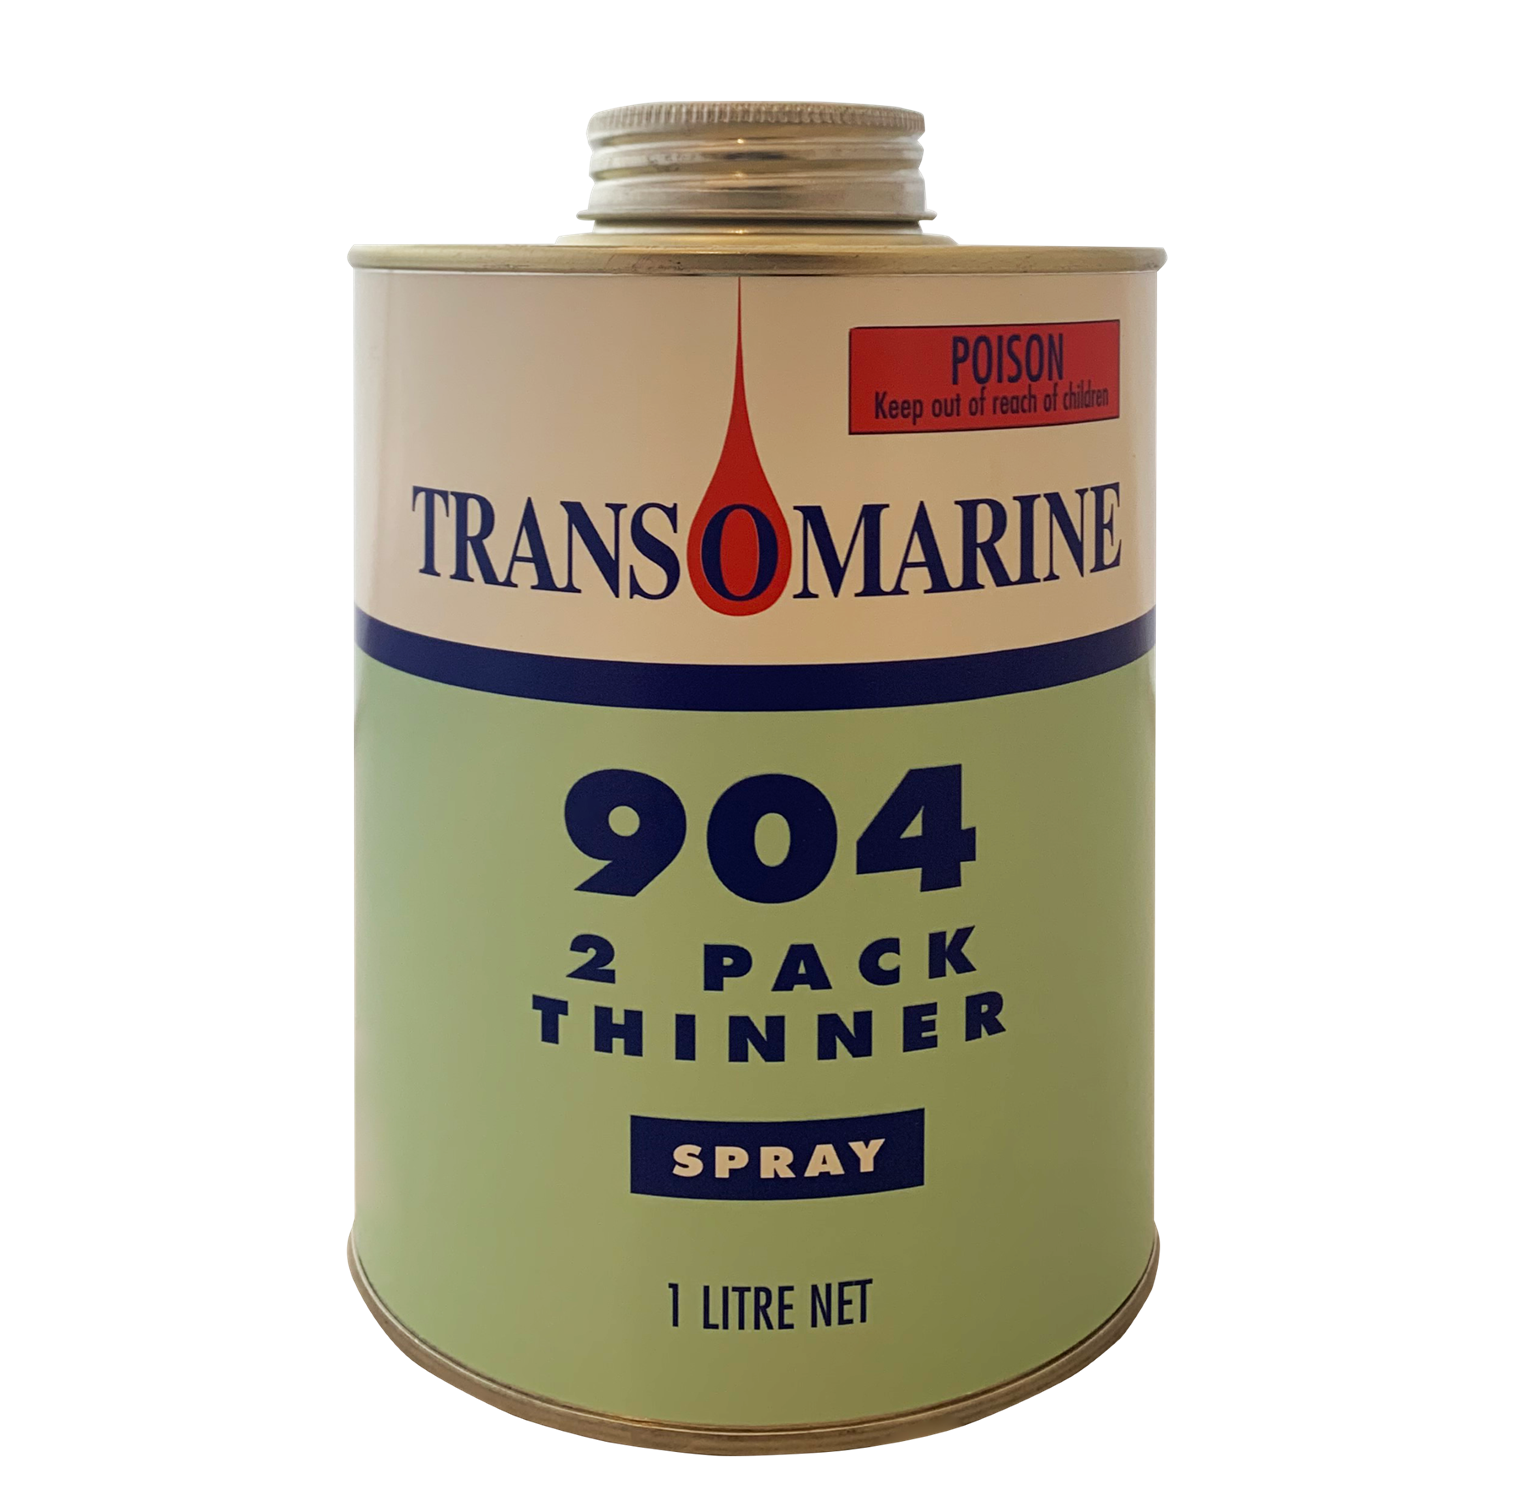 Transomarine 904 Thinners